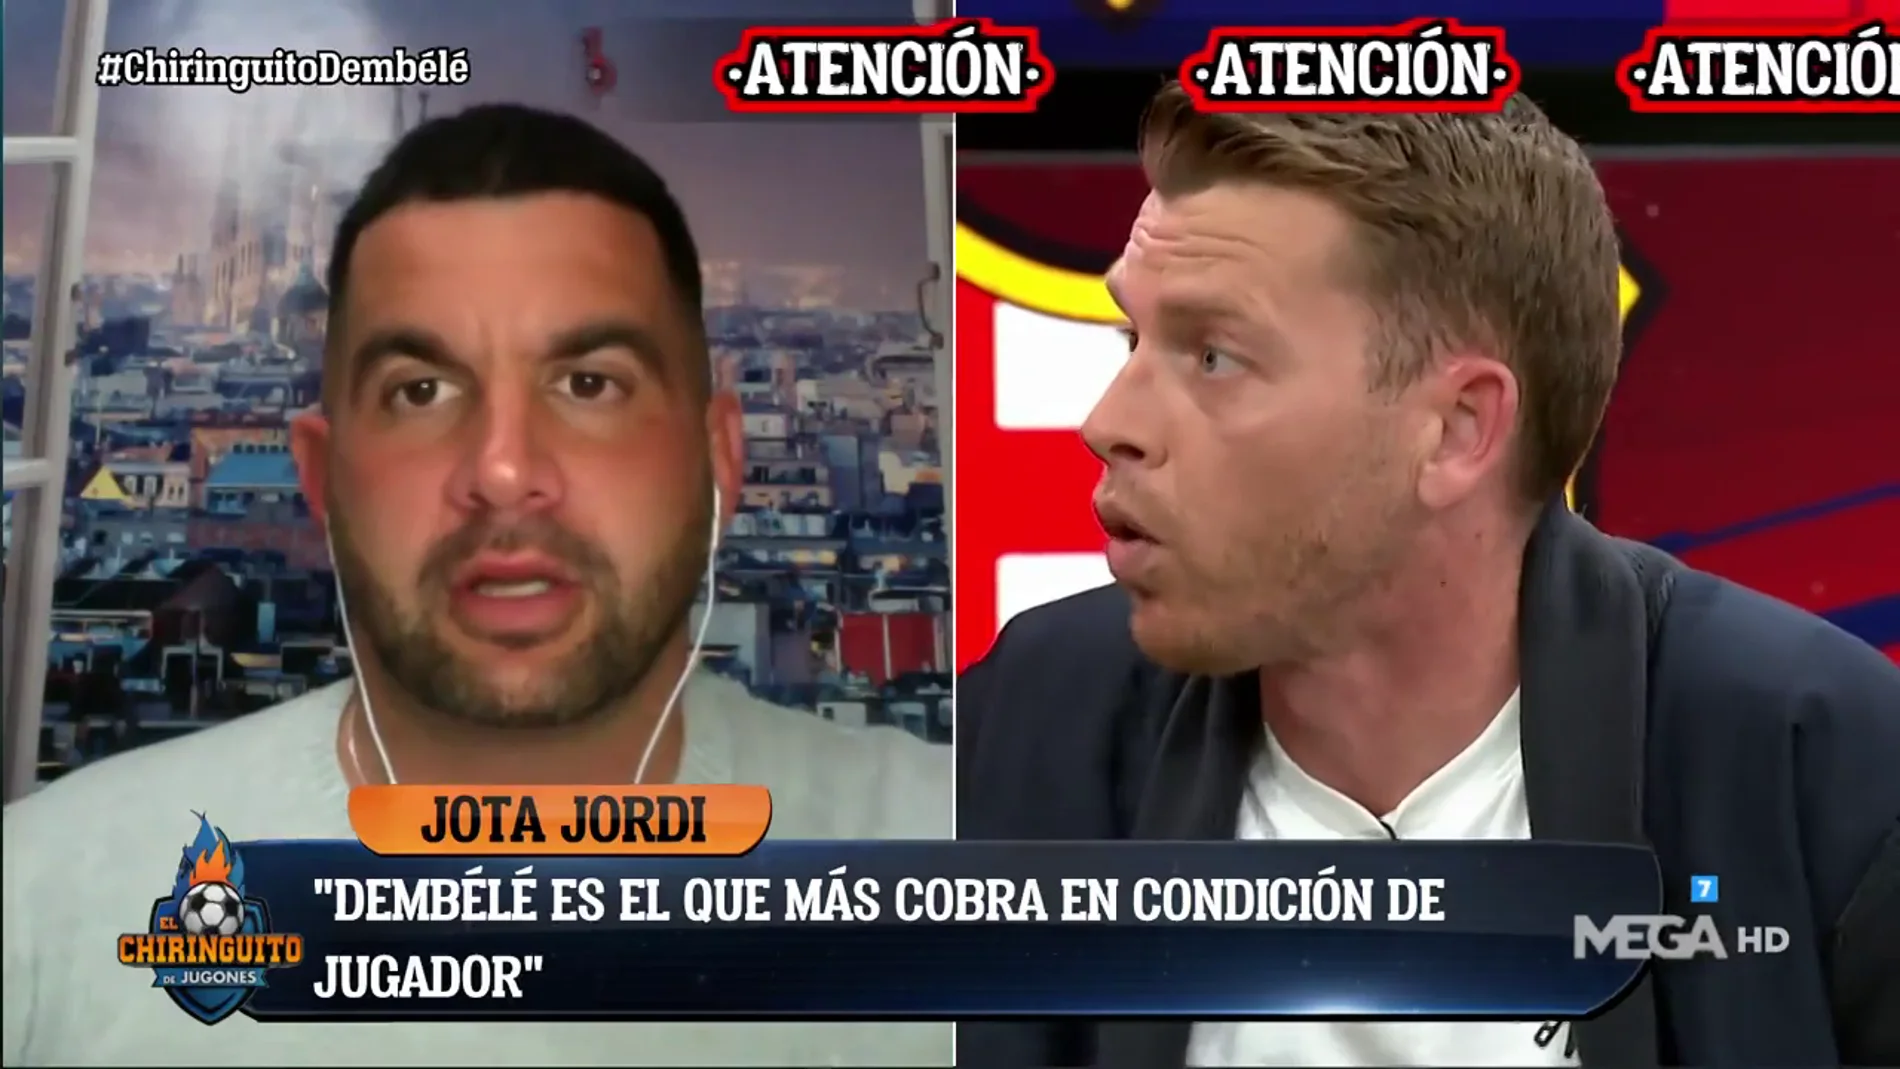 Jota Jordi: "Dembélé es el que más cobra del Barça como jugador de fútbol"